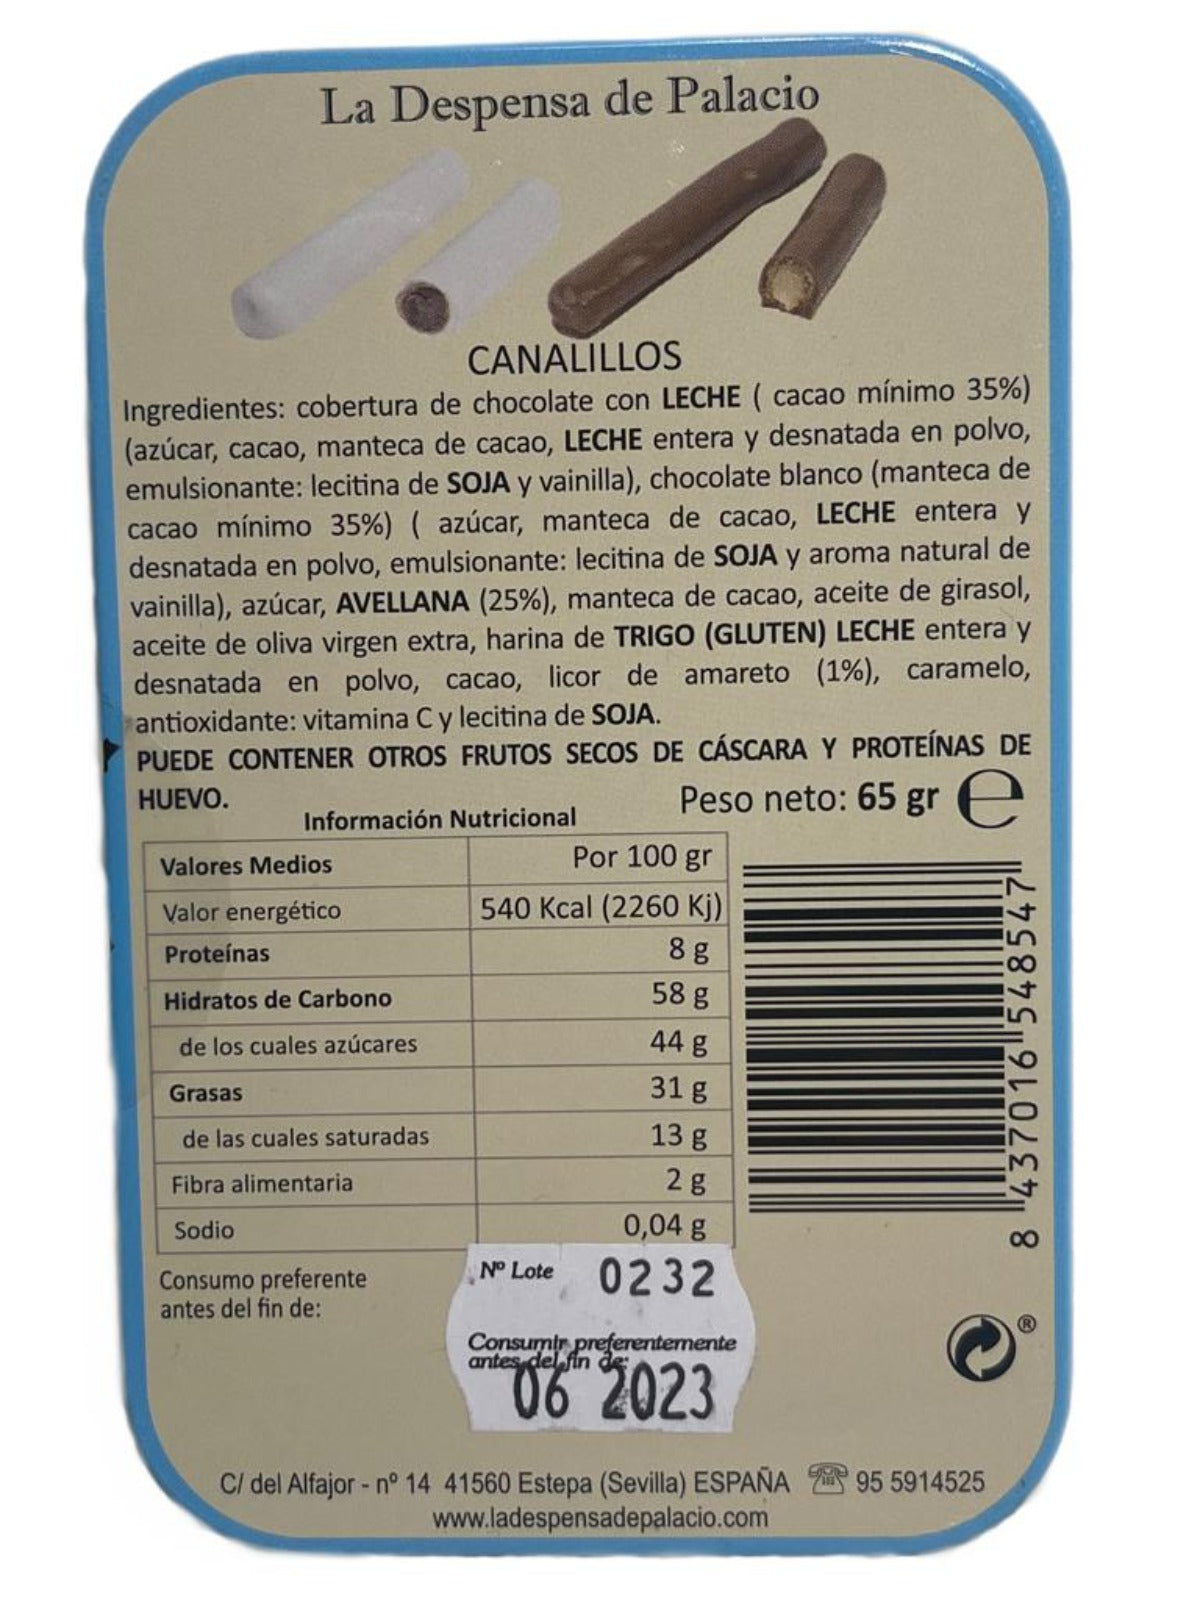 La Despensa de Palacio Canalillos Spanish Chocolate Cigars in Decorative Tin-El Chico de la Costa 65g